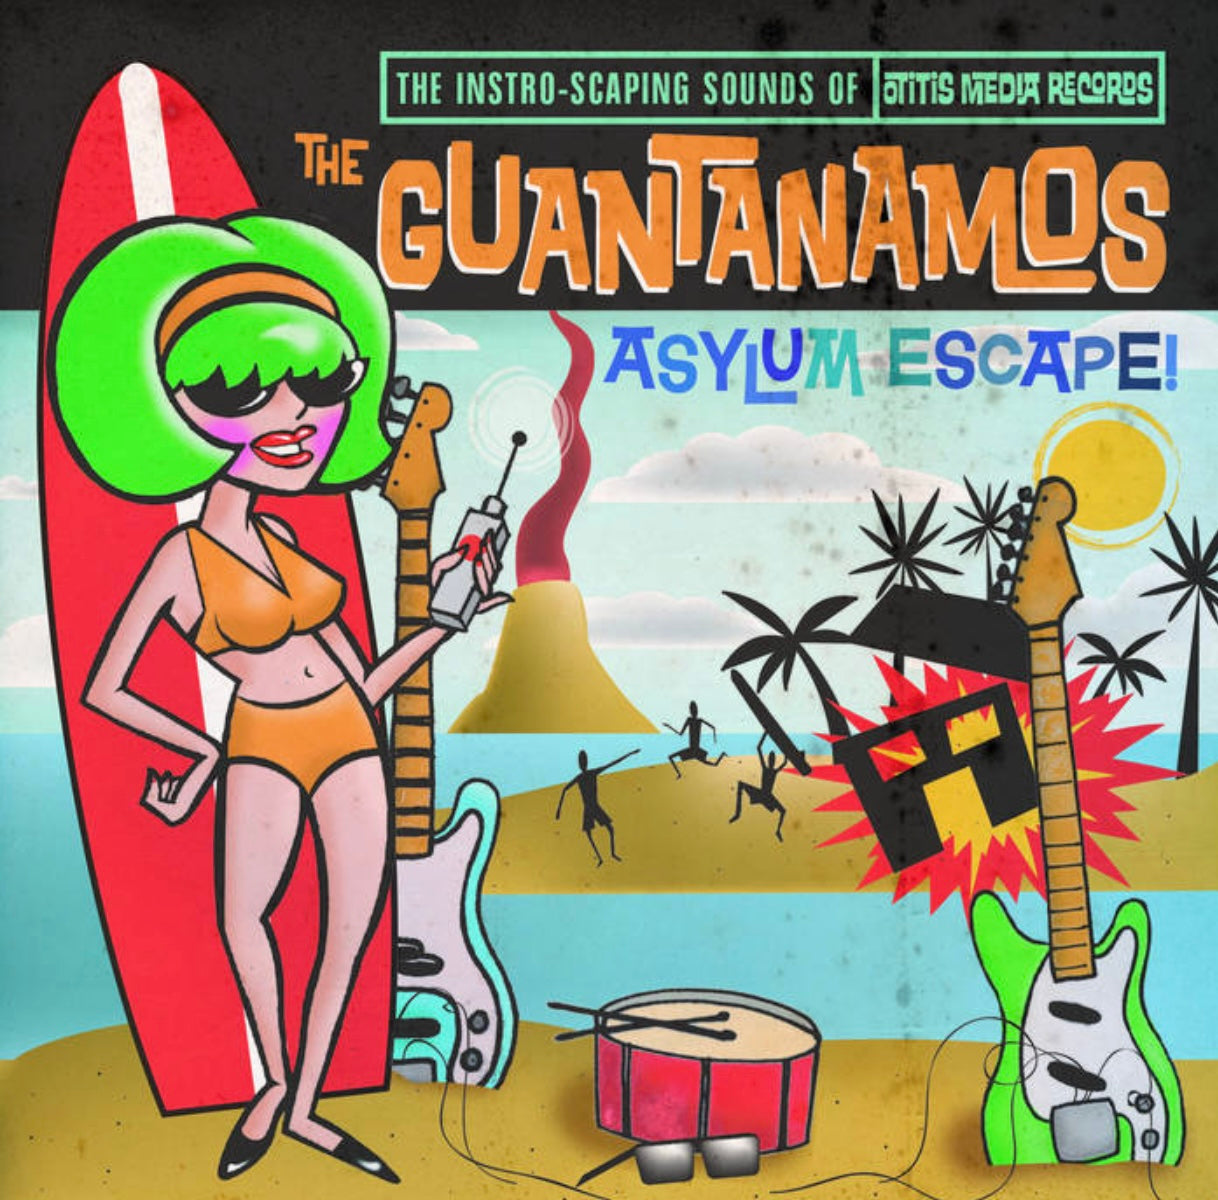 OMR-032 THE GUANTANAMOS “Asylum Escape” CD/EP